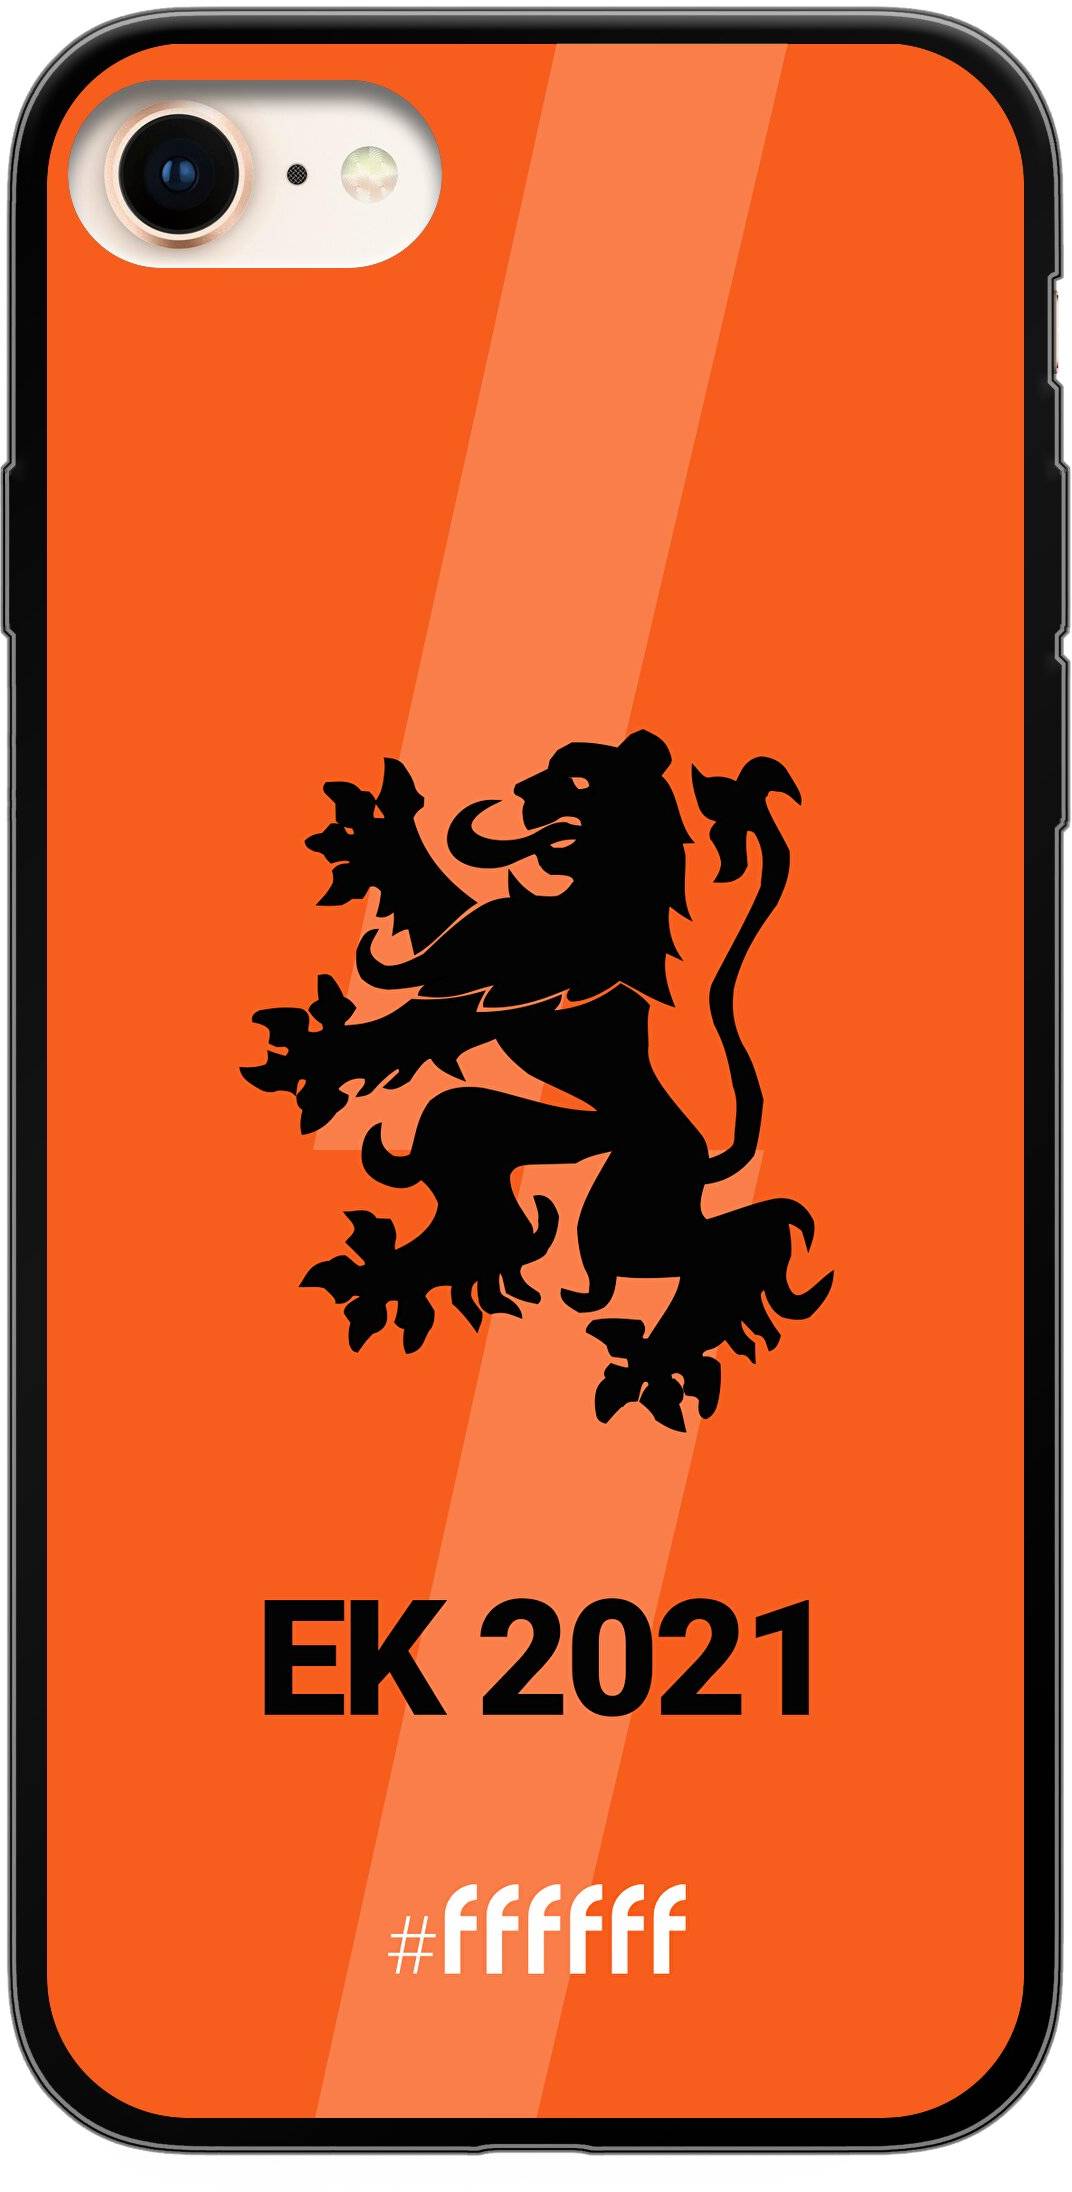 Nederlands Elftal - EK 2021 iPhone 7